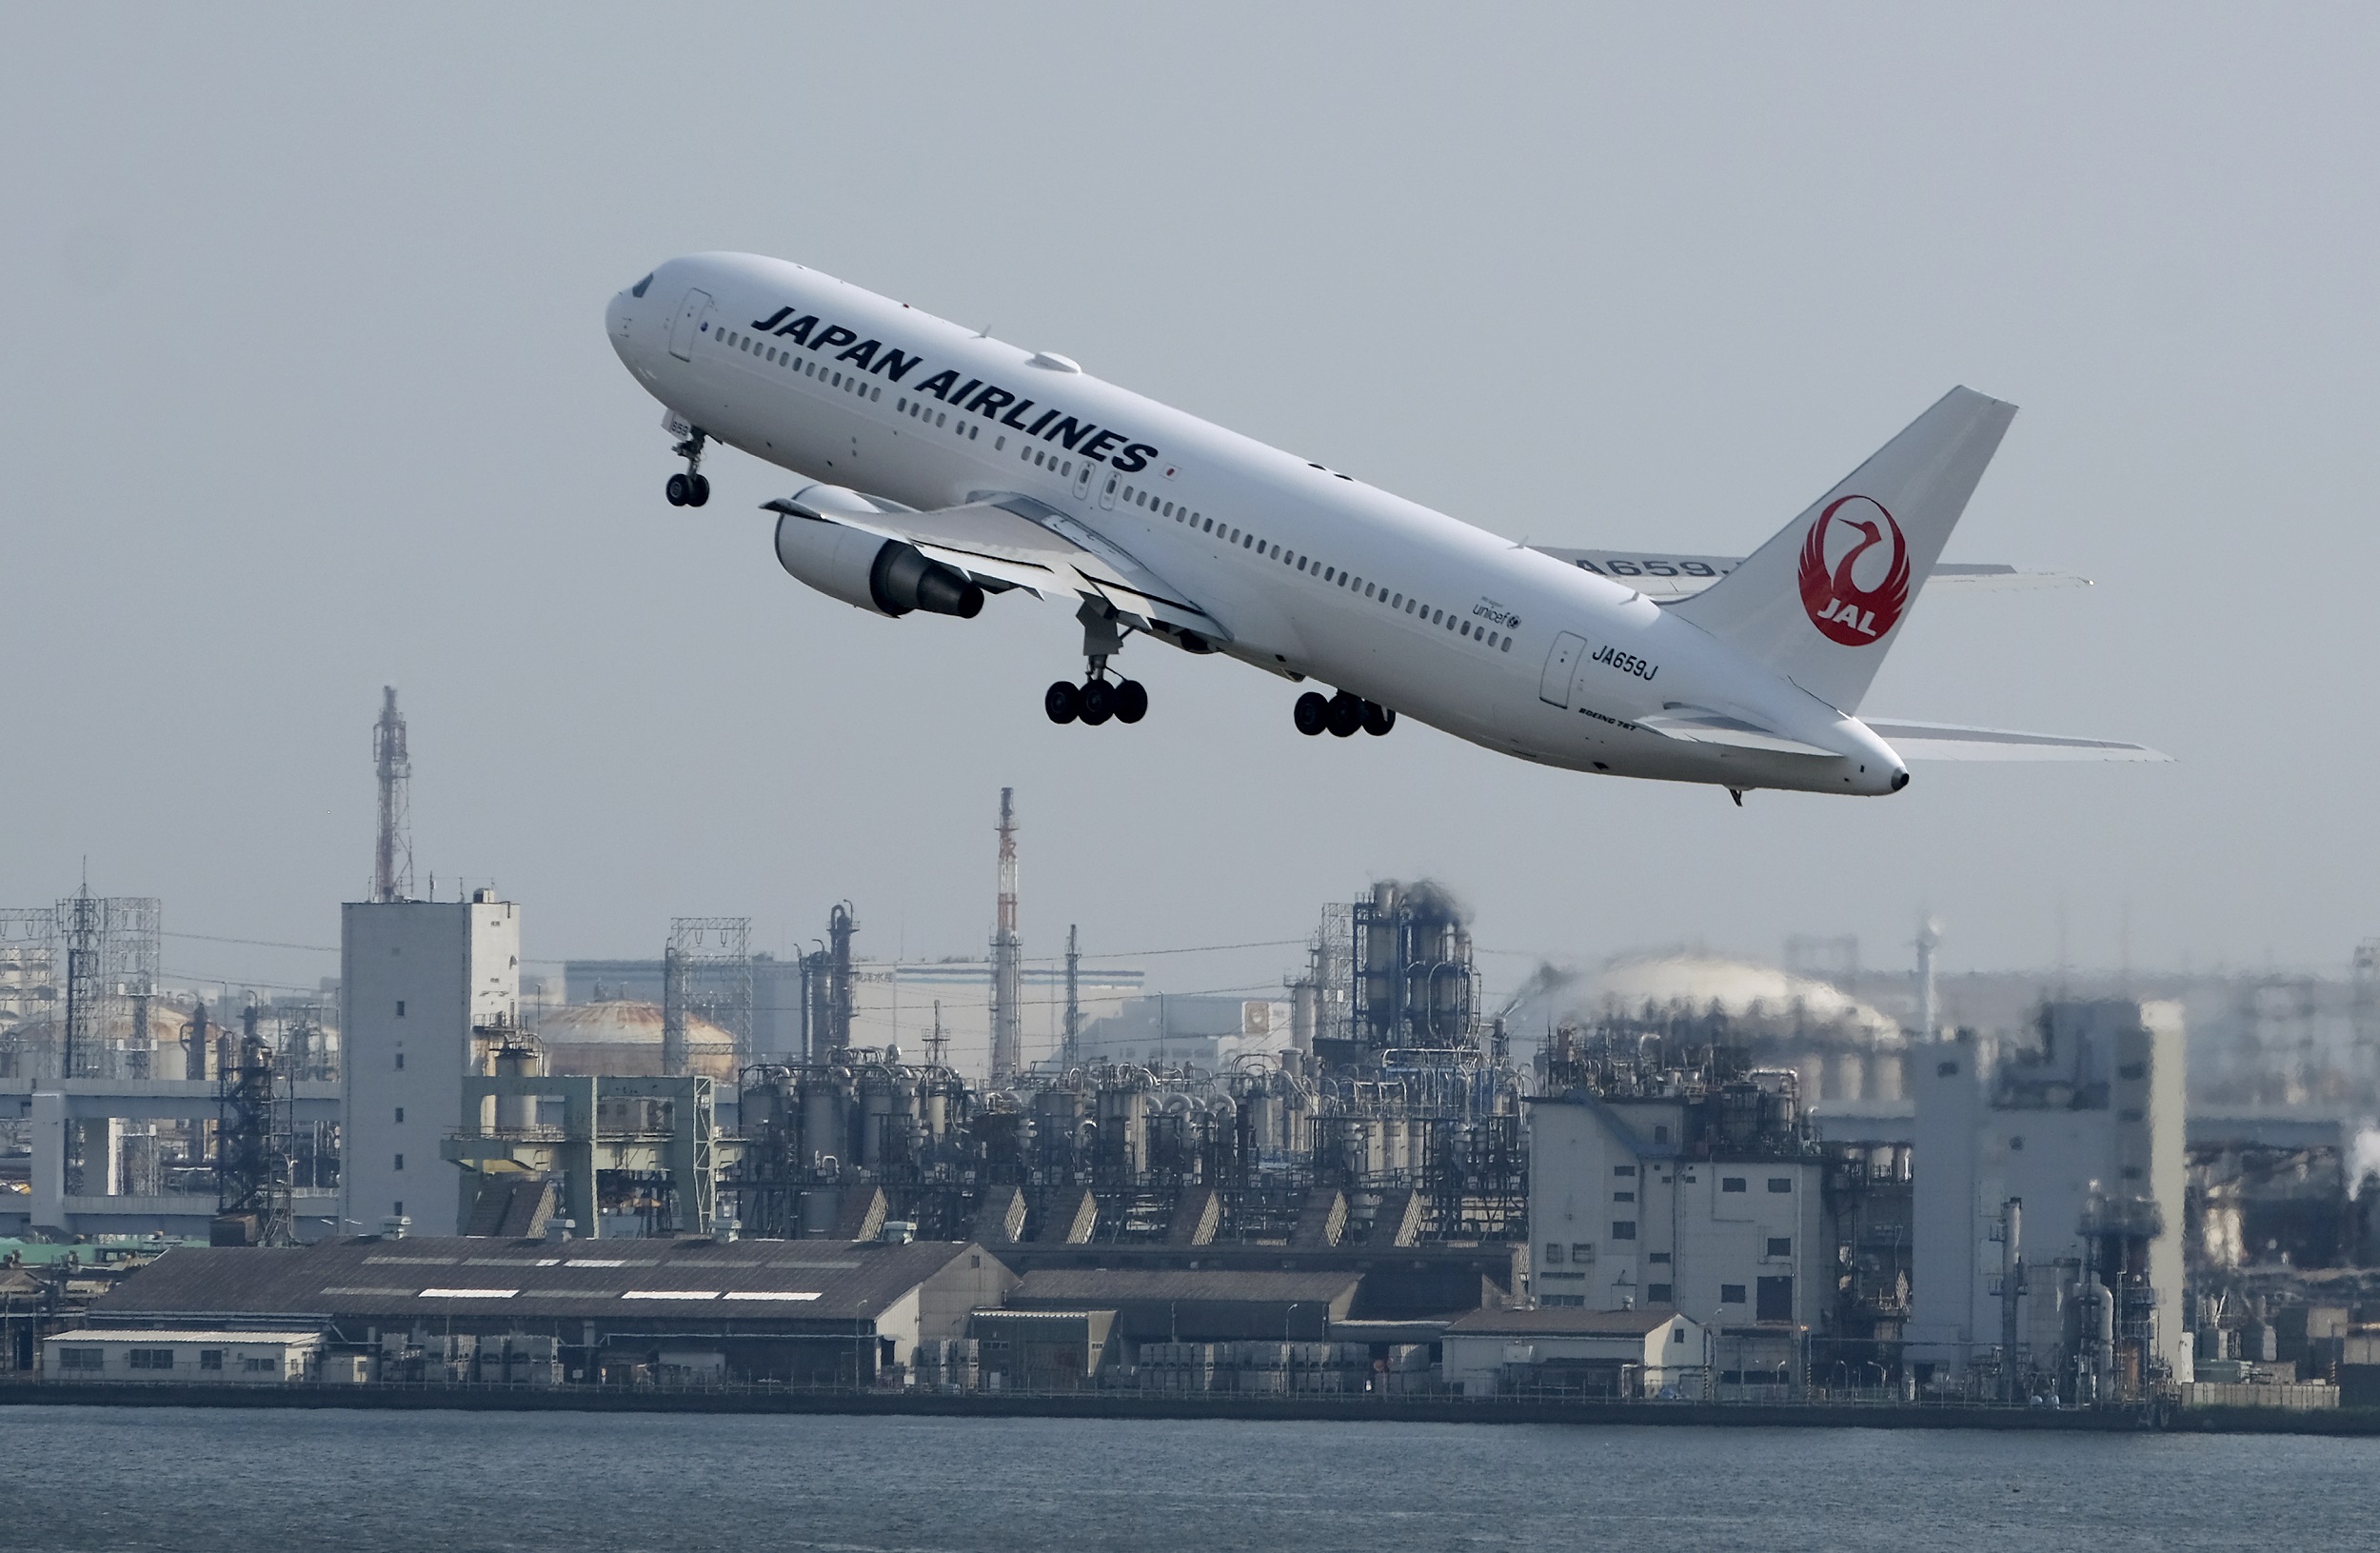 जापान एयरलाइन्सको वातावरणमैत्री विमानको उडान सञ्चालन